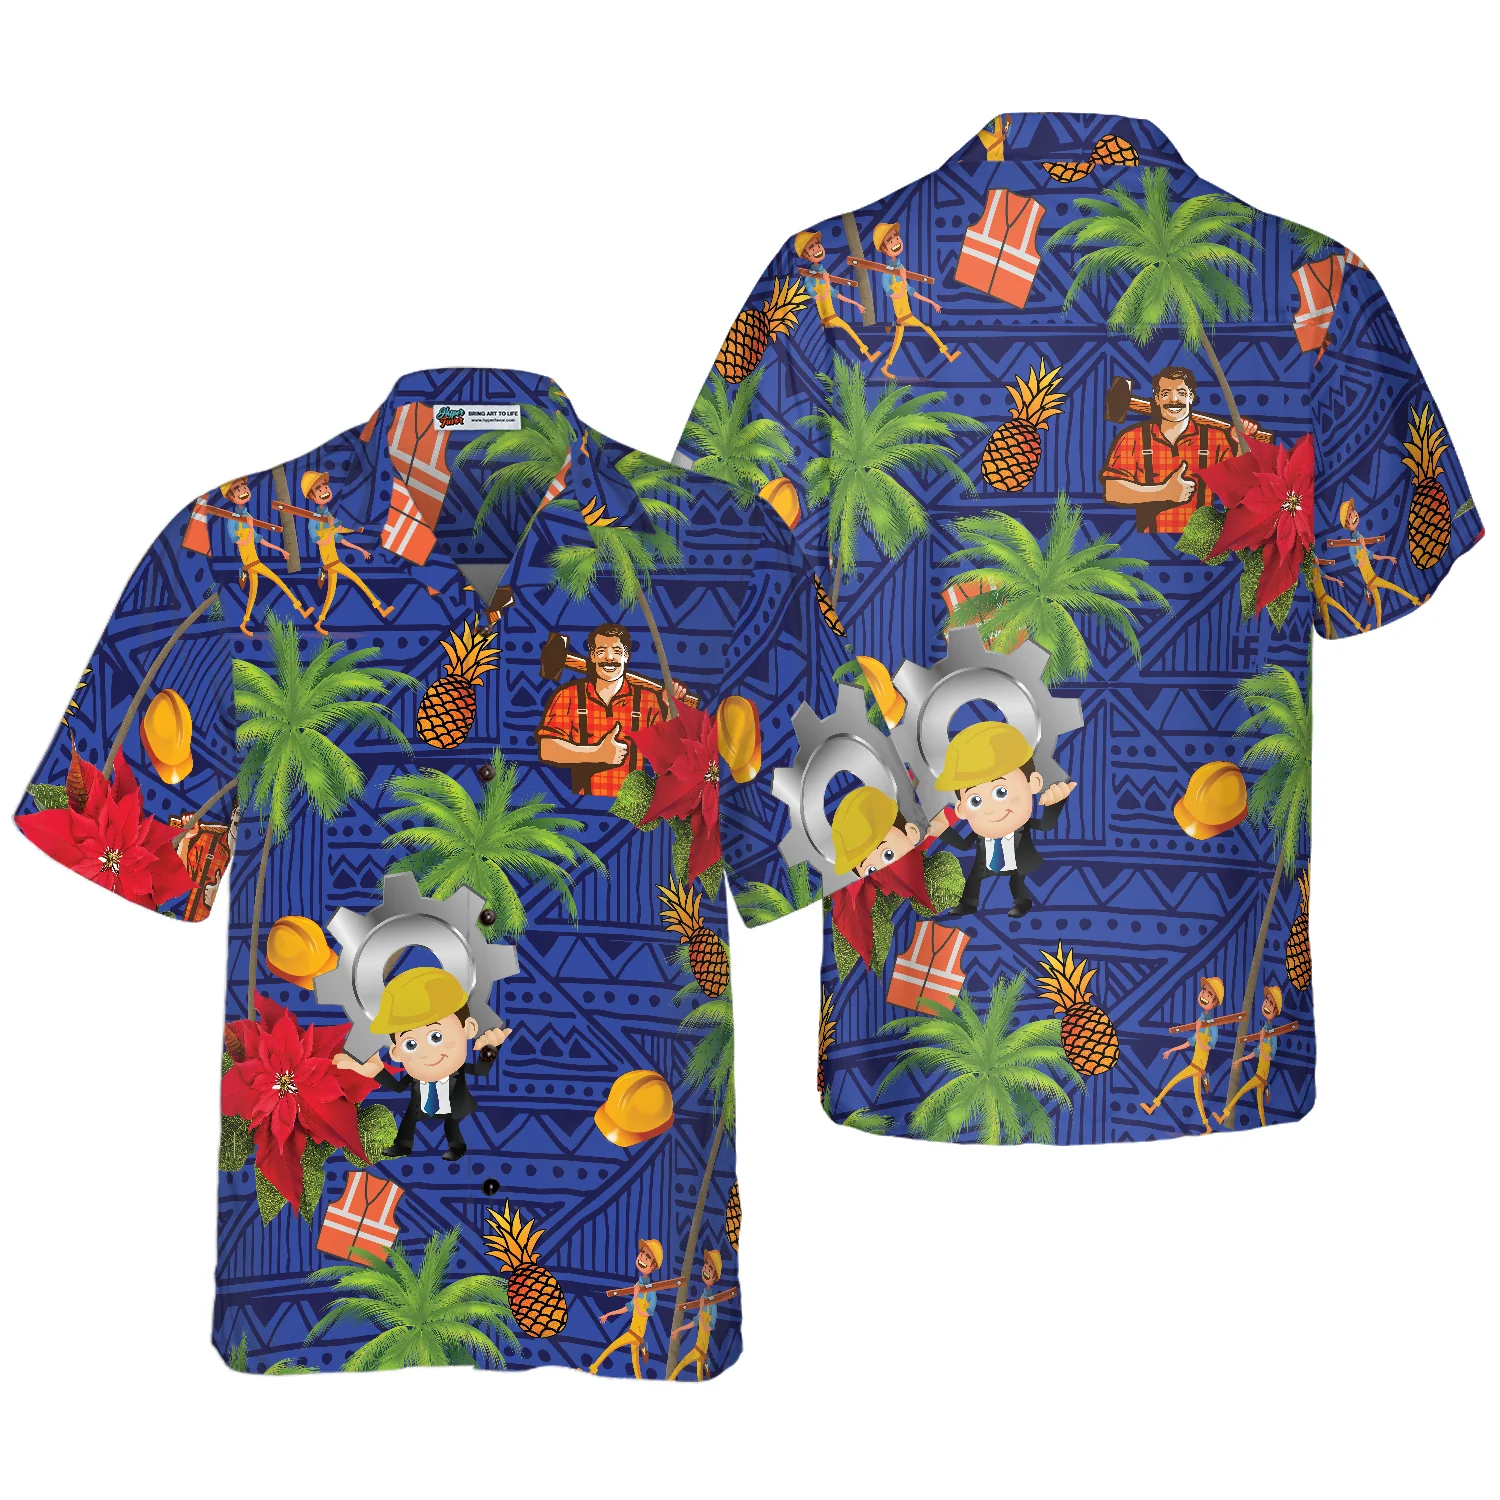 Laborer Proud Hawaiian Shirt Aloha Shirt For Men and Women